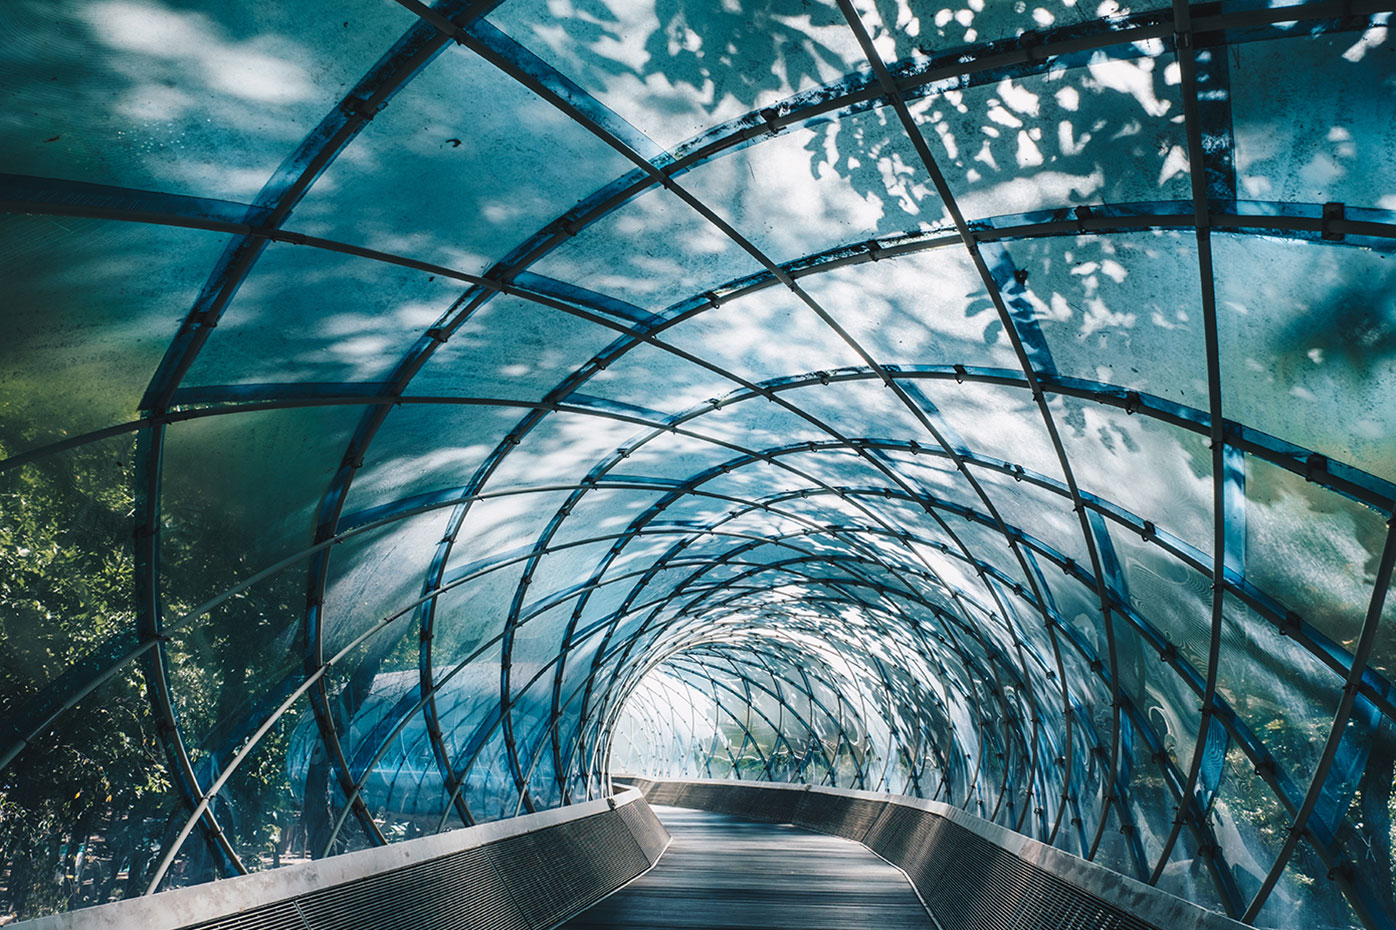 A glass-walled tunnel extends through a light-filled garden